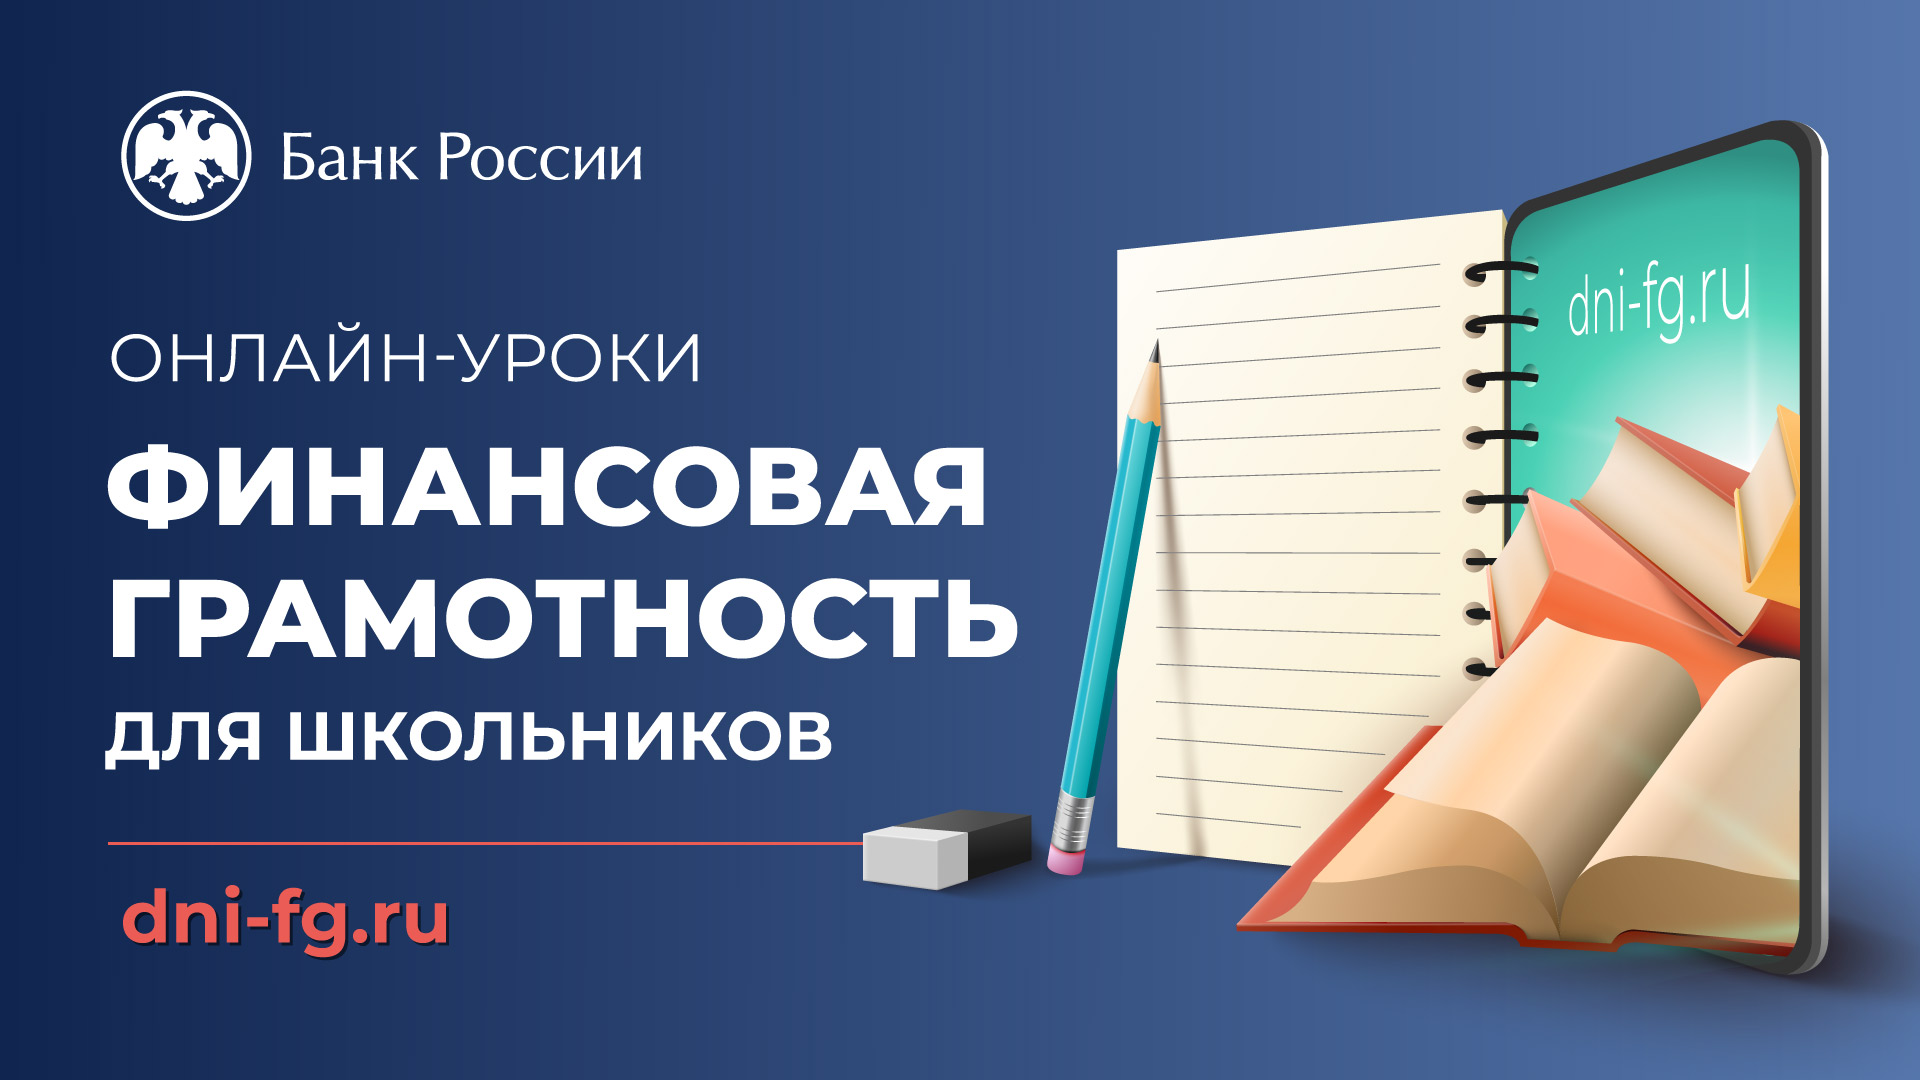 Онлайн-уроки Банка России.